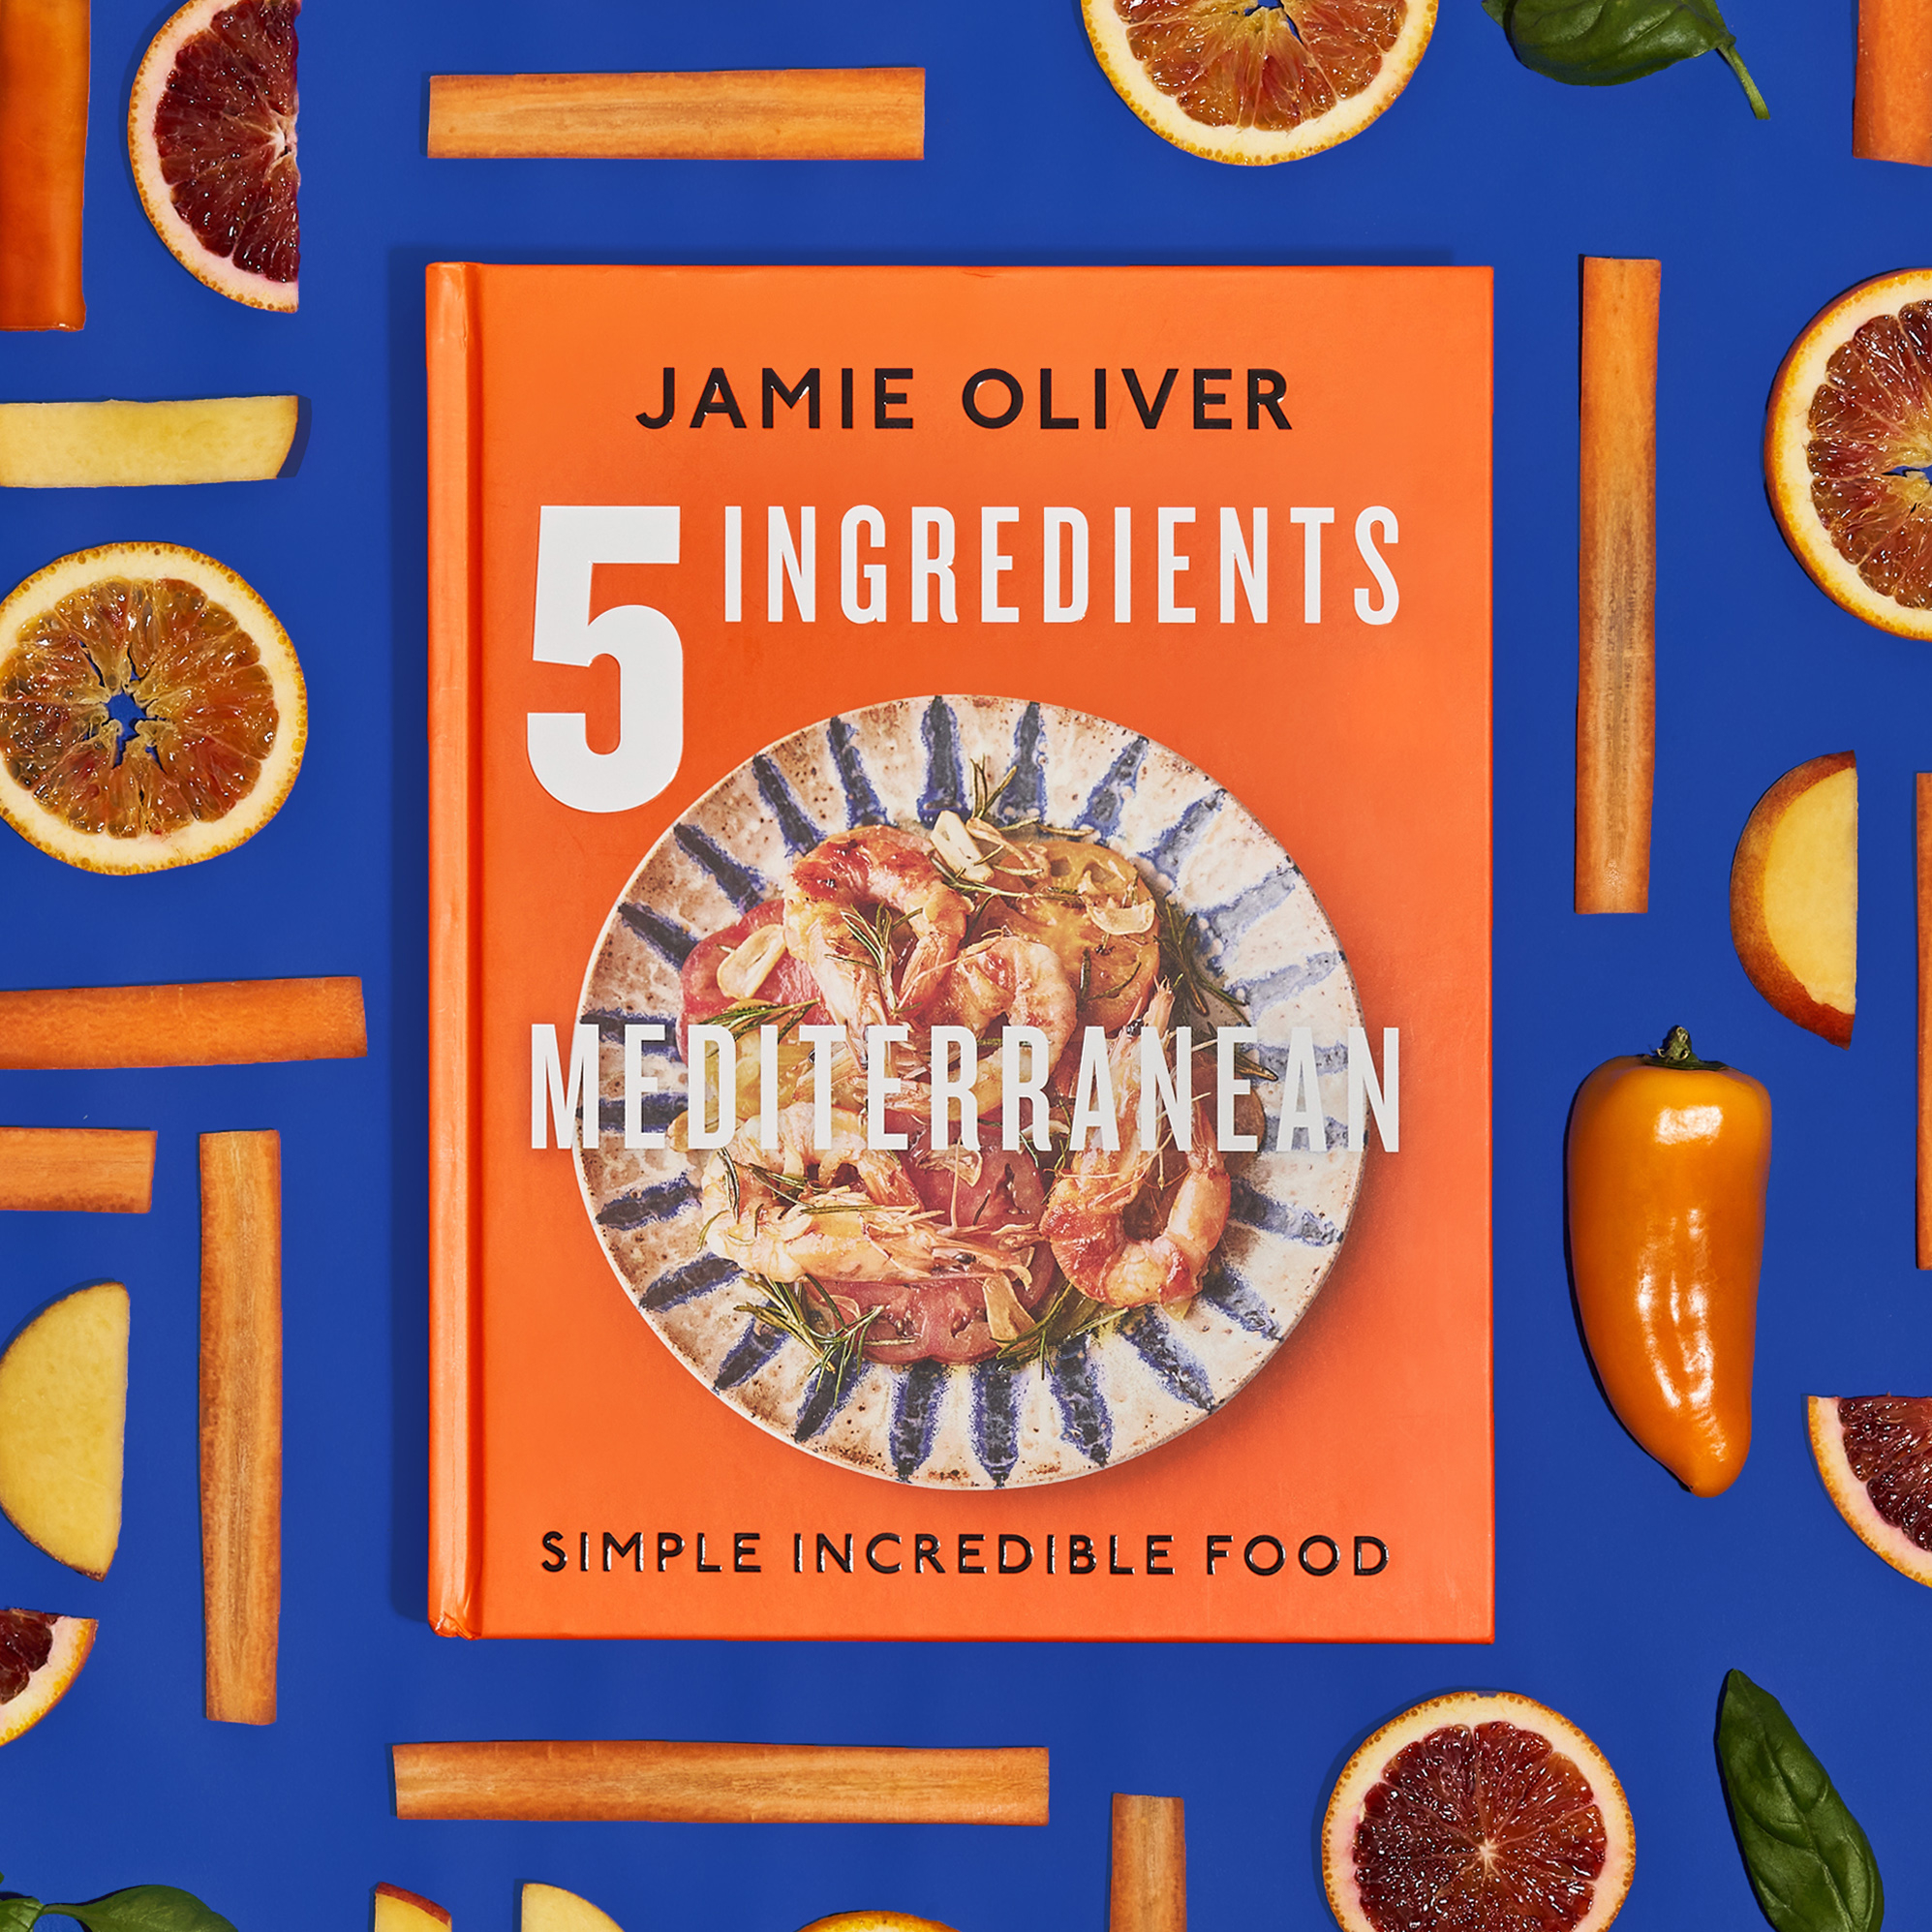 Jamie Oliver 5 Ingredients Mediterranean